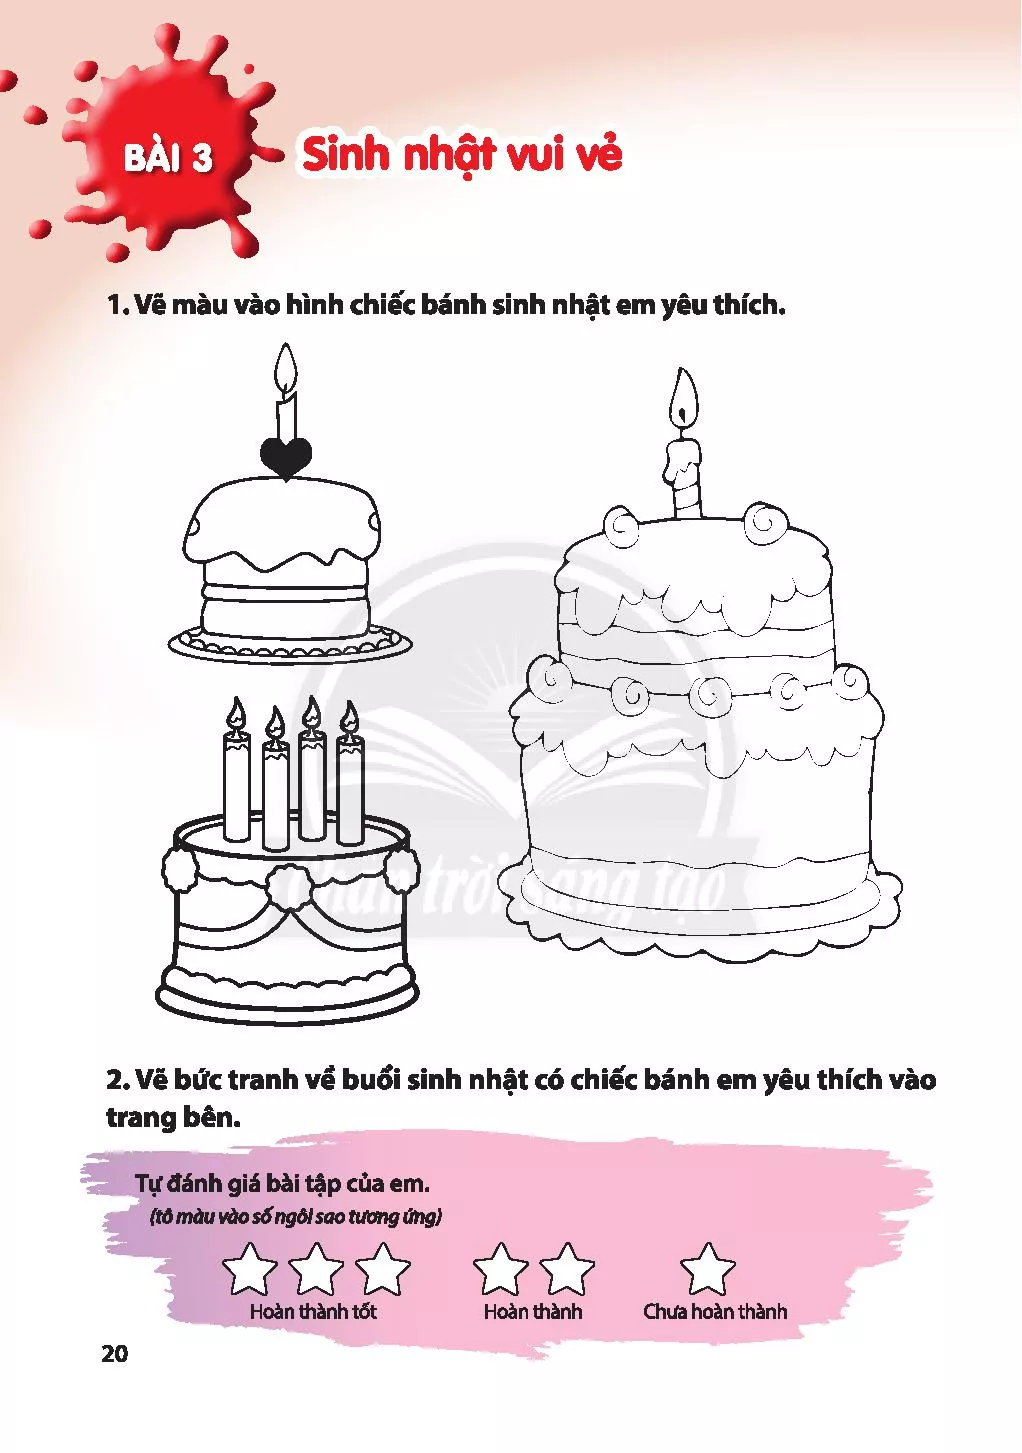 Hướng dẫn vẽ bánh kem và hộp quà sinh nhật chỉ trong vài bước đơn giản. Hình ảnh sẽ giúp bạn hiểu rõ các bước làm và tạo ra những sản phẩm tuyệt đẹp. Đừng ngần ngại, thử chế tác tác cho người thân một món quà tuyệt vời nhé!